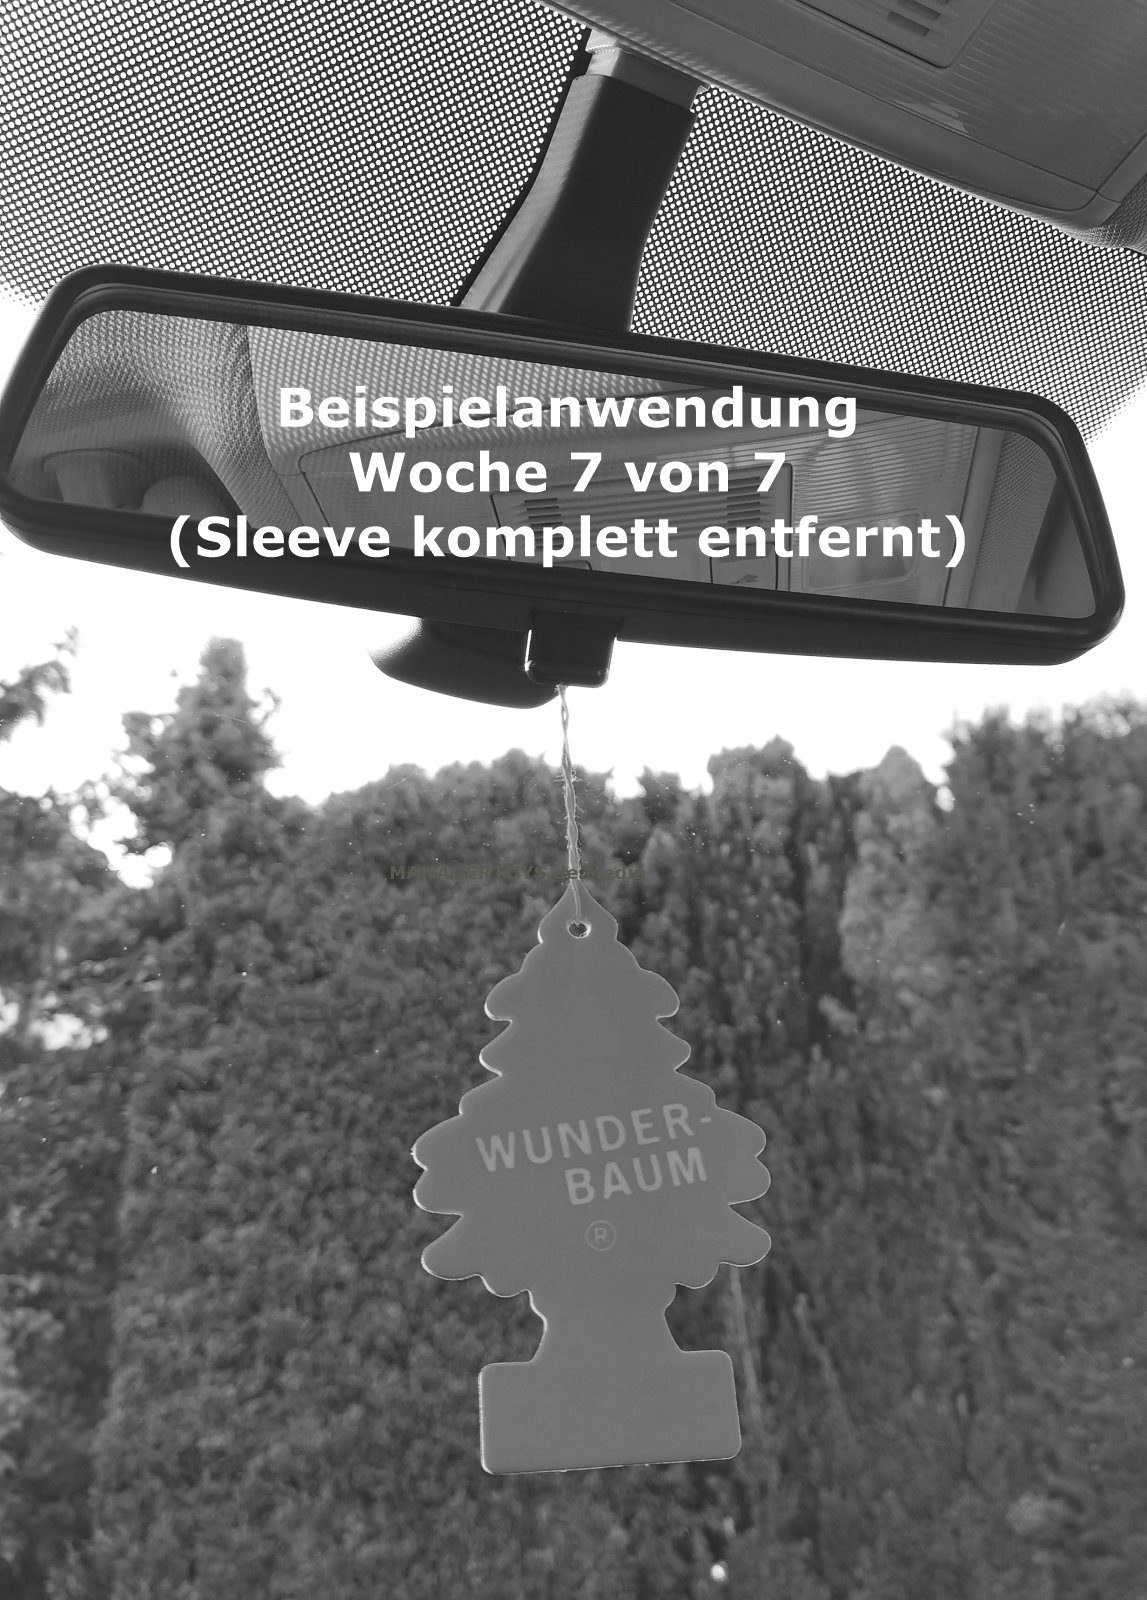 Wunder-Baum Hänge-Weihnachtsbaum New Car Neuwagen 3 Wunderbaum Lufterfrischer 3er Set Duftbäumchen